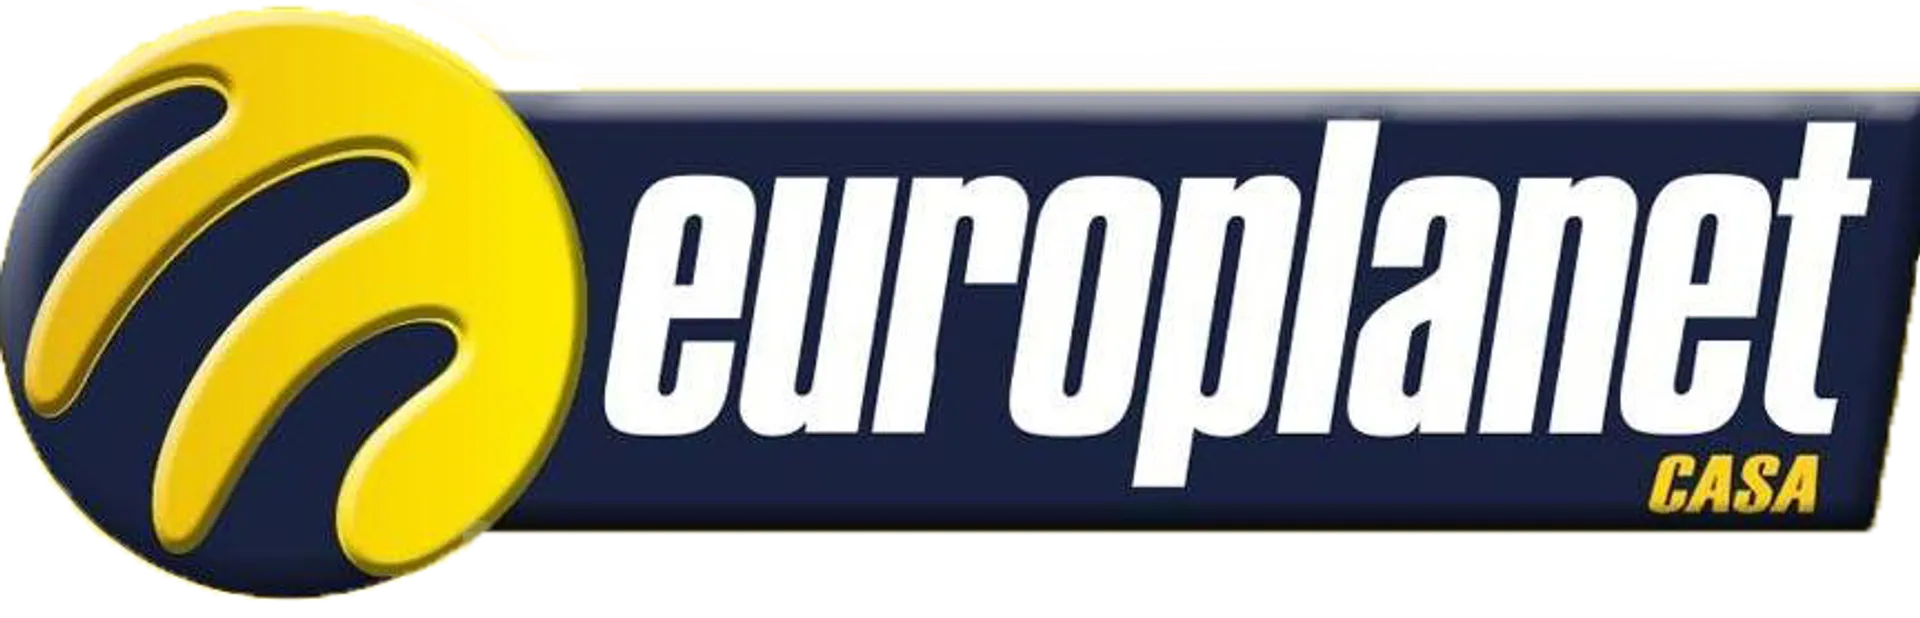 EUROPLANET logo